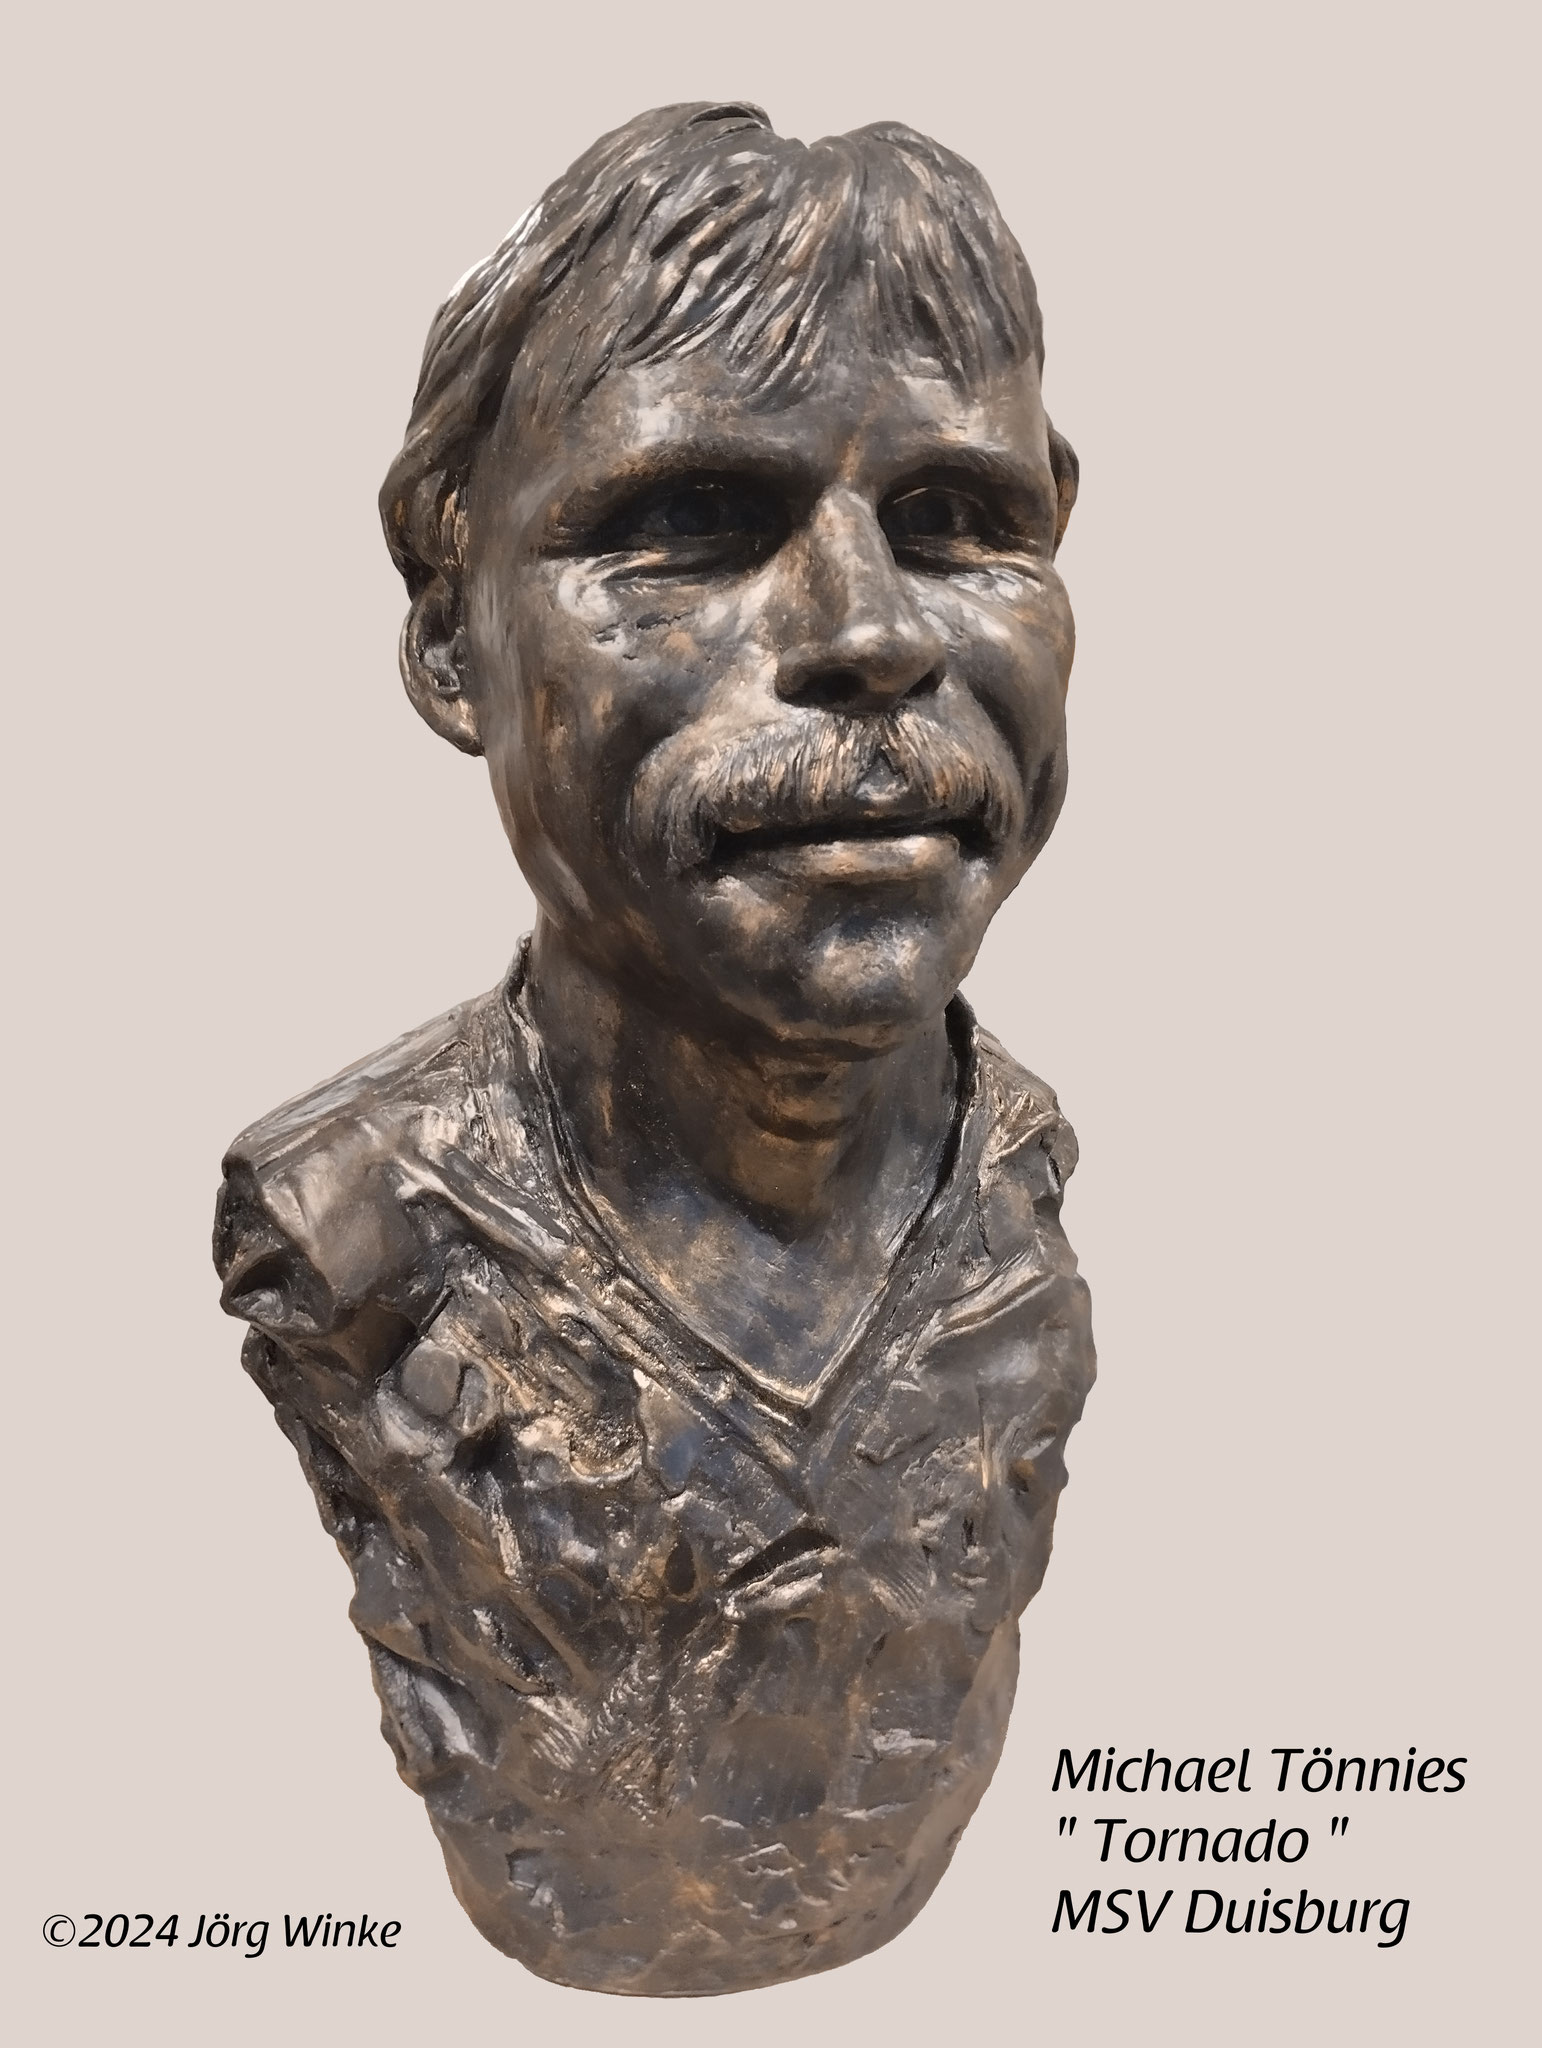 Büste Klein, Michael Tönnies " Tornado " Größe 20 cm, aus 2024, aus feiner Bronze,  Auflage: 1902 Exemplare, Preis auf Anfrage